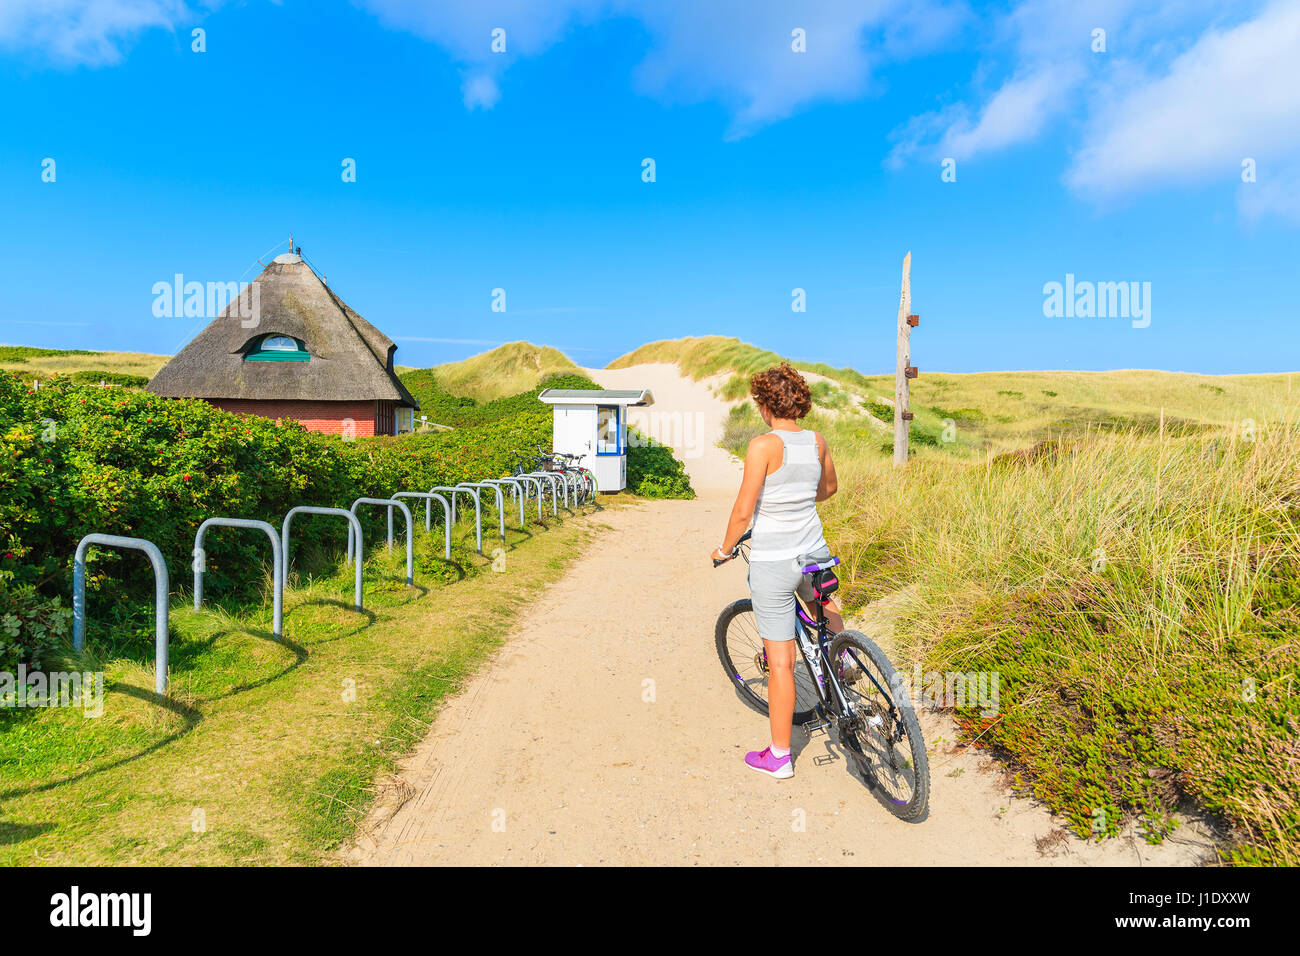 Insel SYLT, Deutschland - SEP 6, 2016: junge Frau auf einem Fahrrad während der Fahrt entlang der Küste von Sylt Insel, Deutschland. Stockfoto